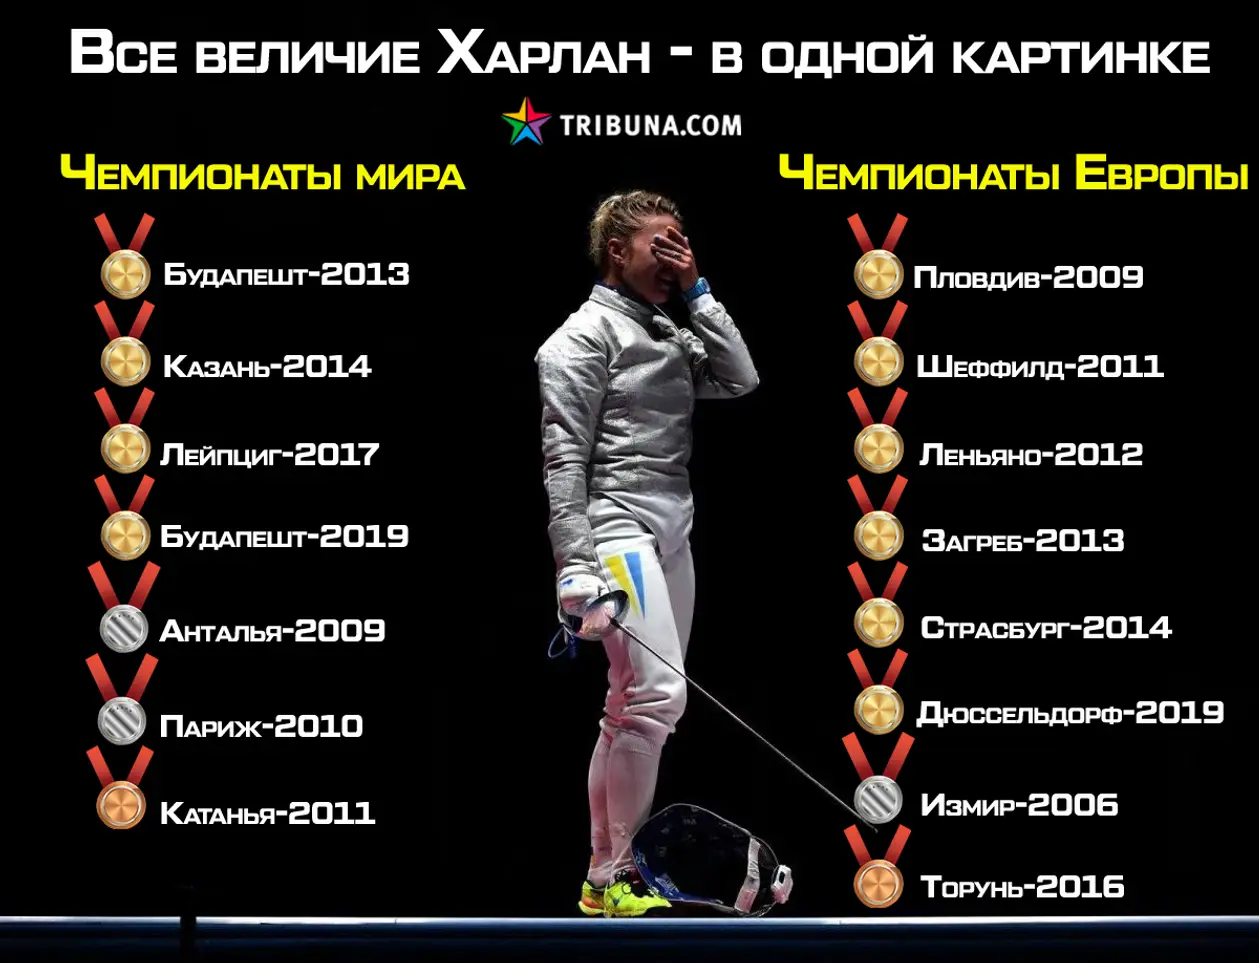 Харлан уже легенда фехтования и, возможно, лучшая спортсменка в истории Украины